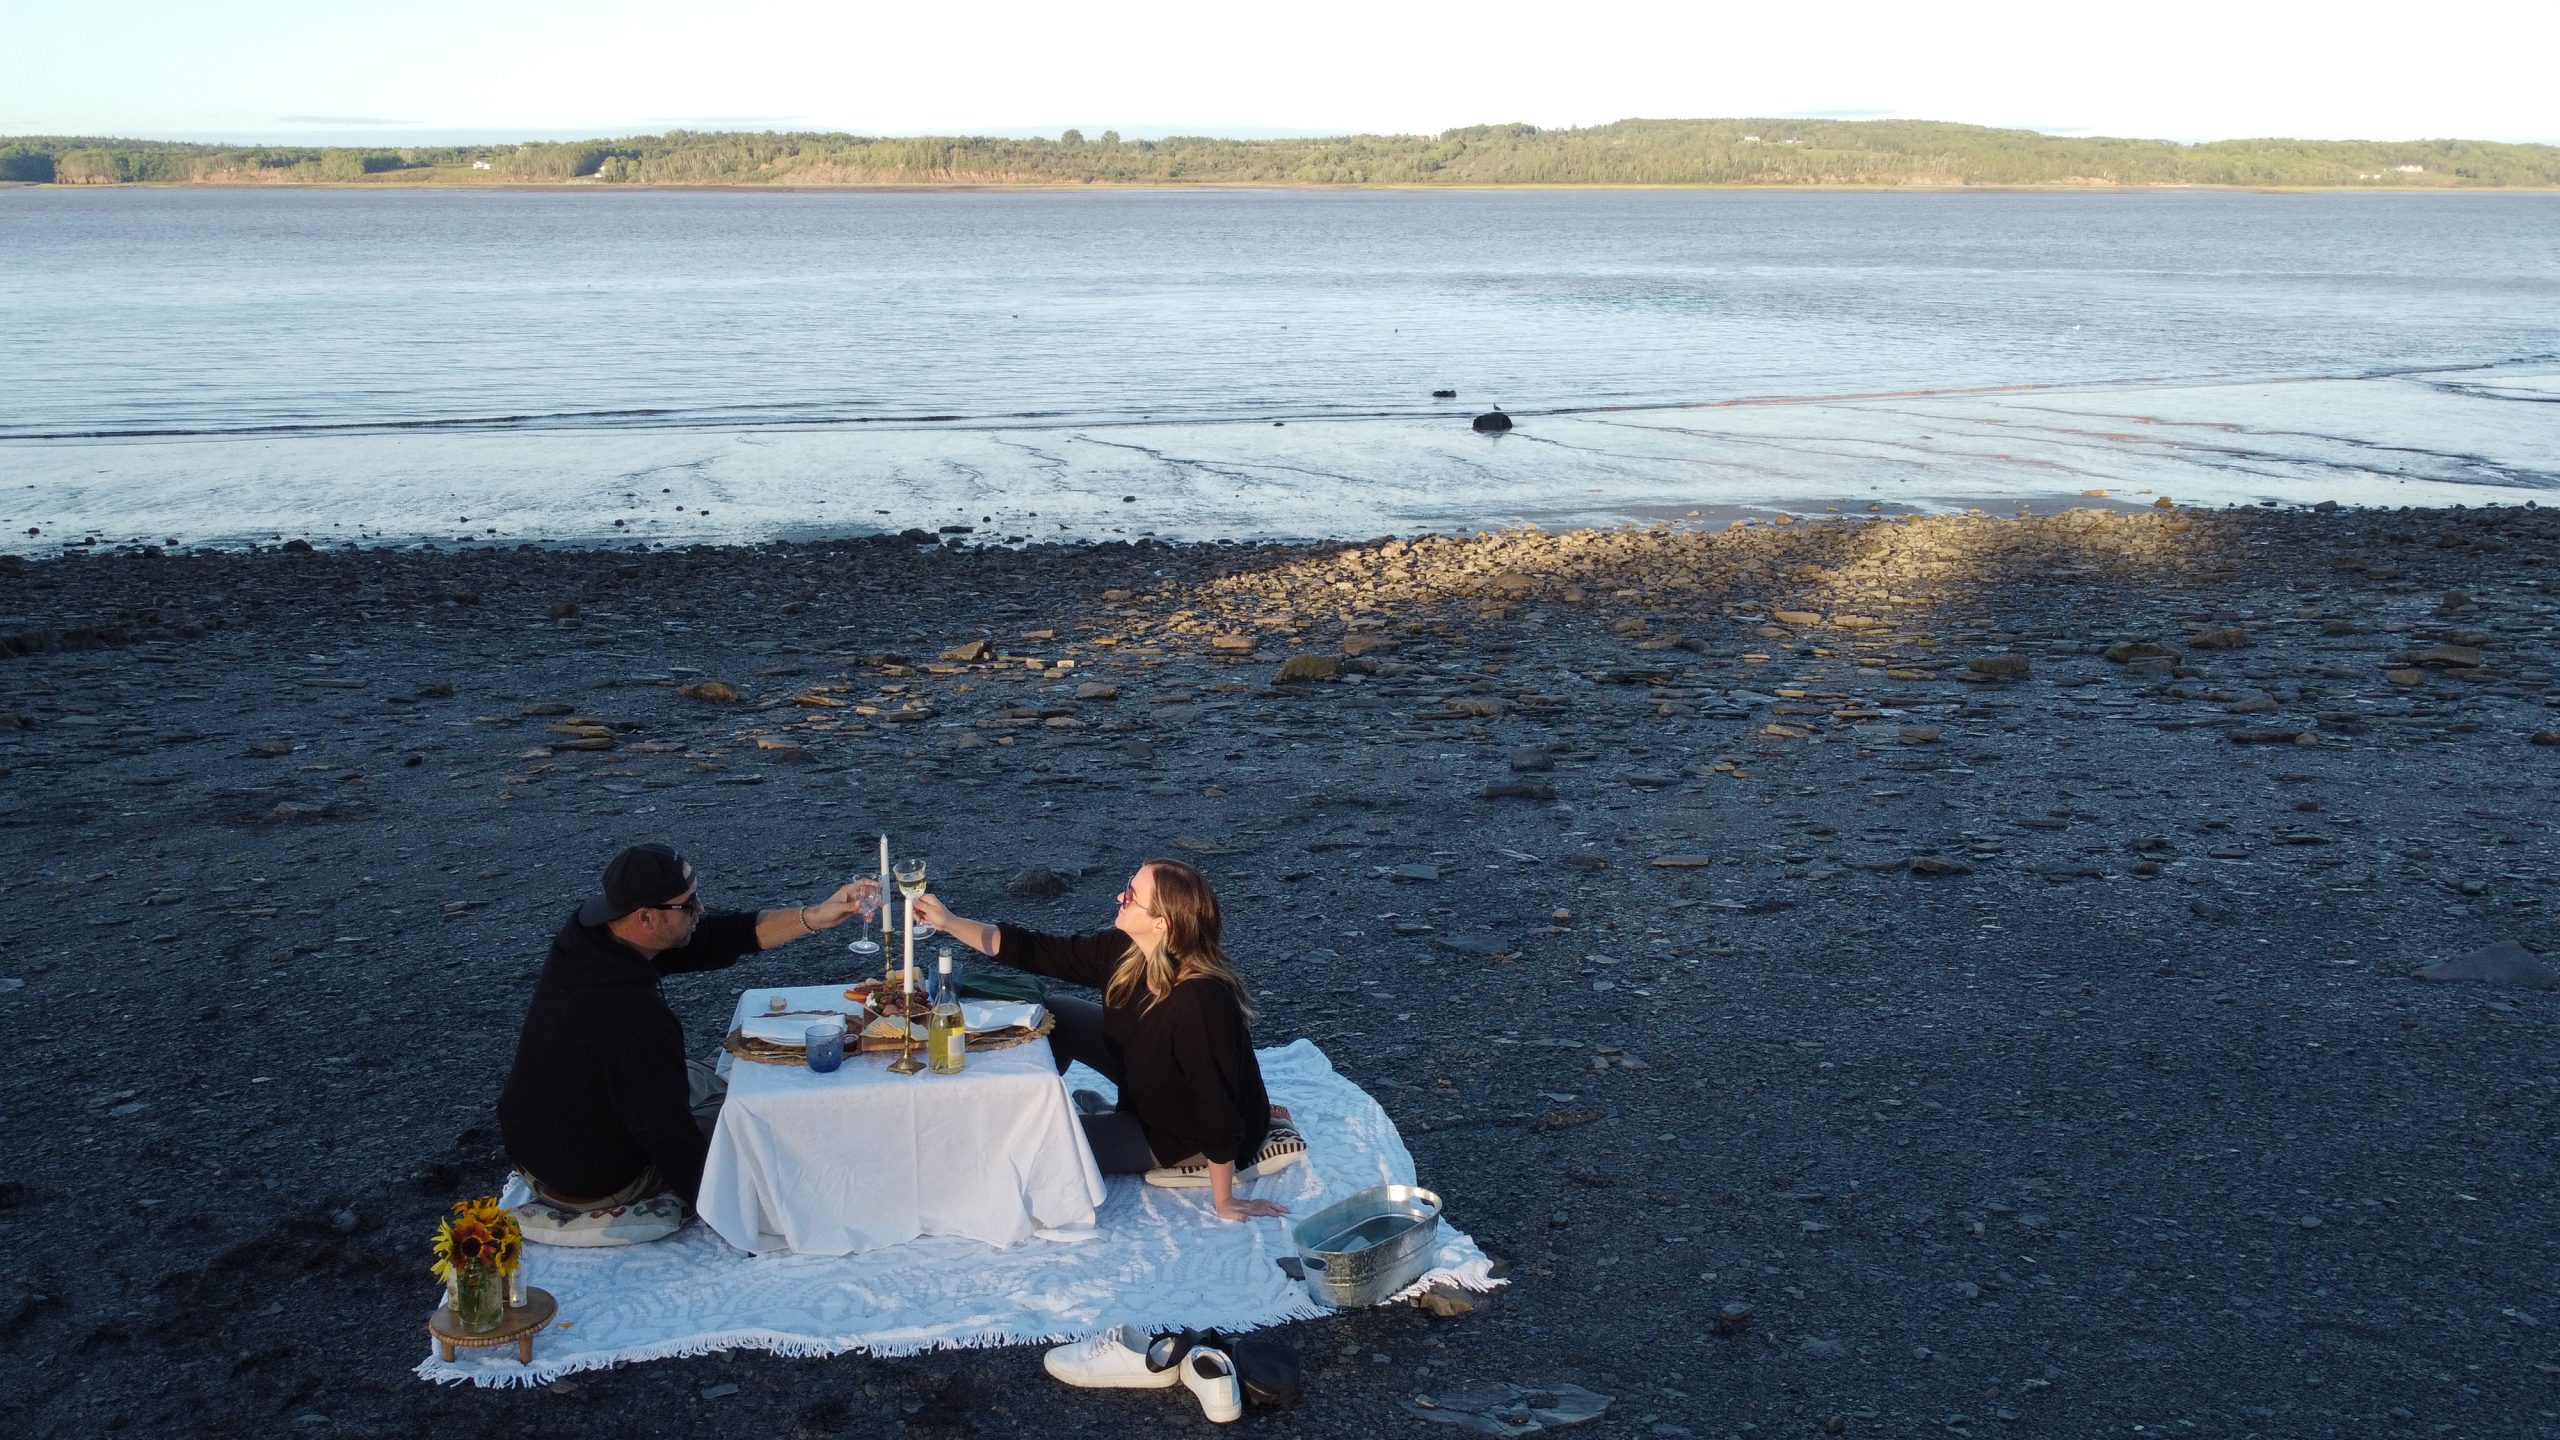 Dining on the ocean floor in Nova Scotia